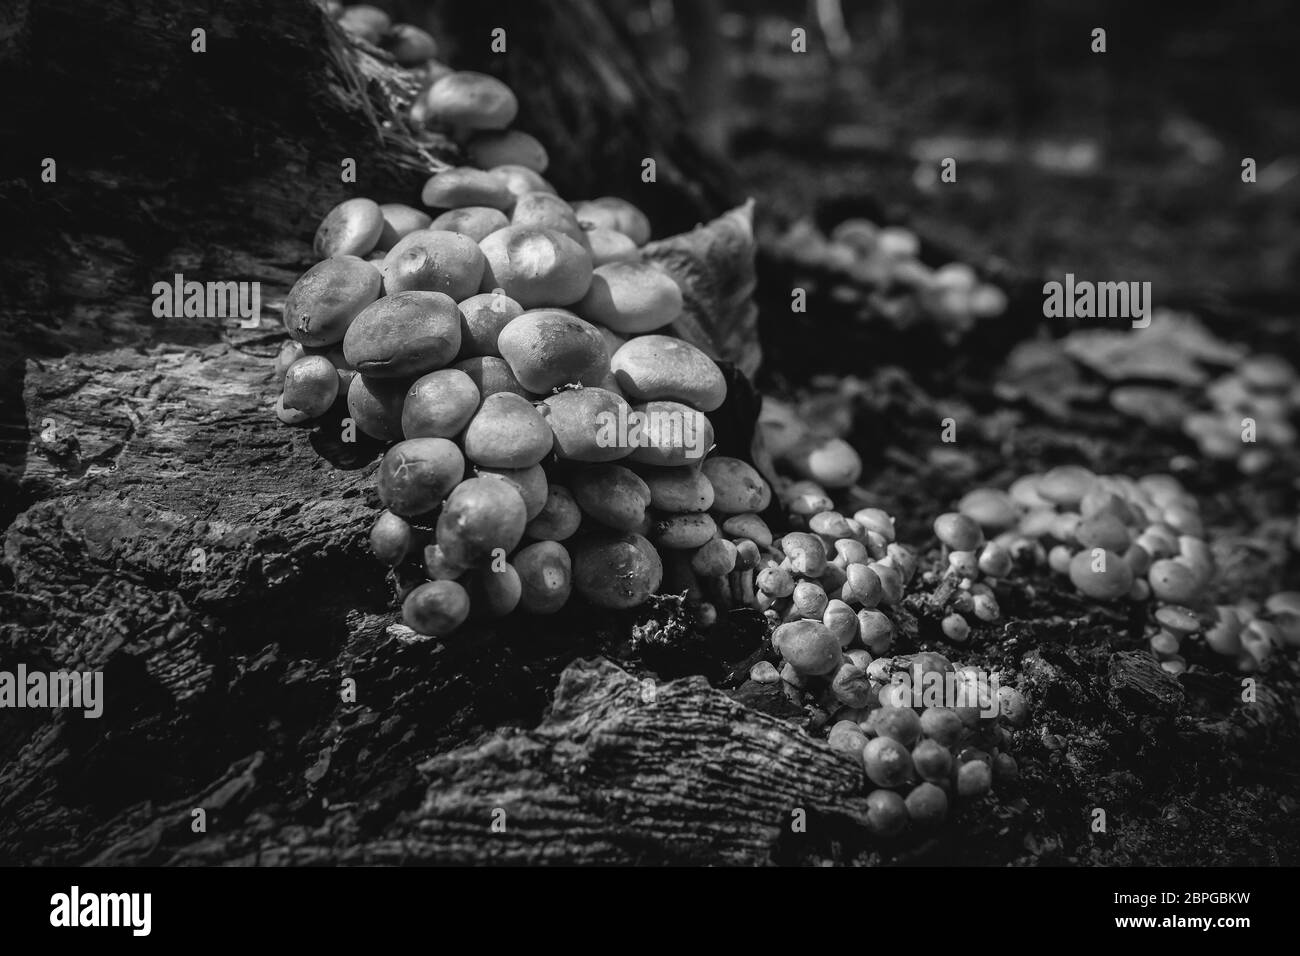 Aufnahme von Grünblättrige Schwefelköpfe auf Totholz - zum Thema Mykologie - Detailaufnahme - in schwarz weiß Stock Photo